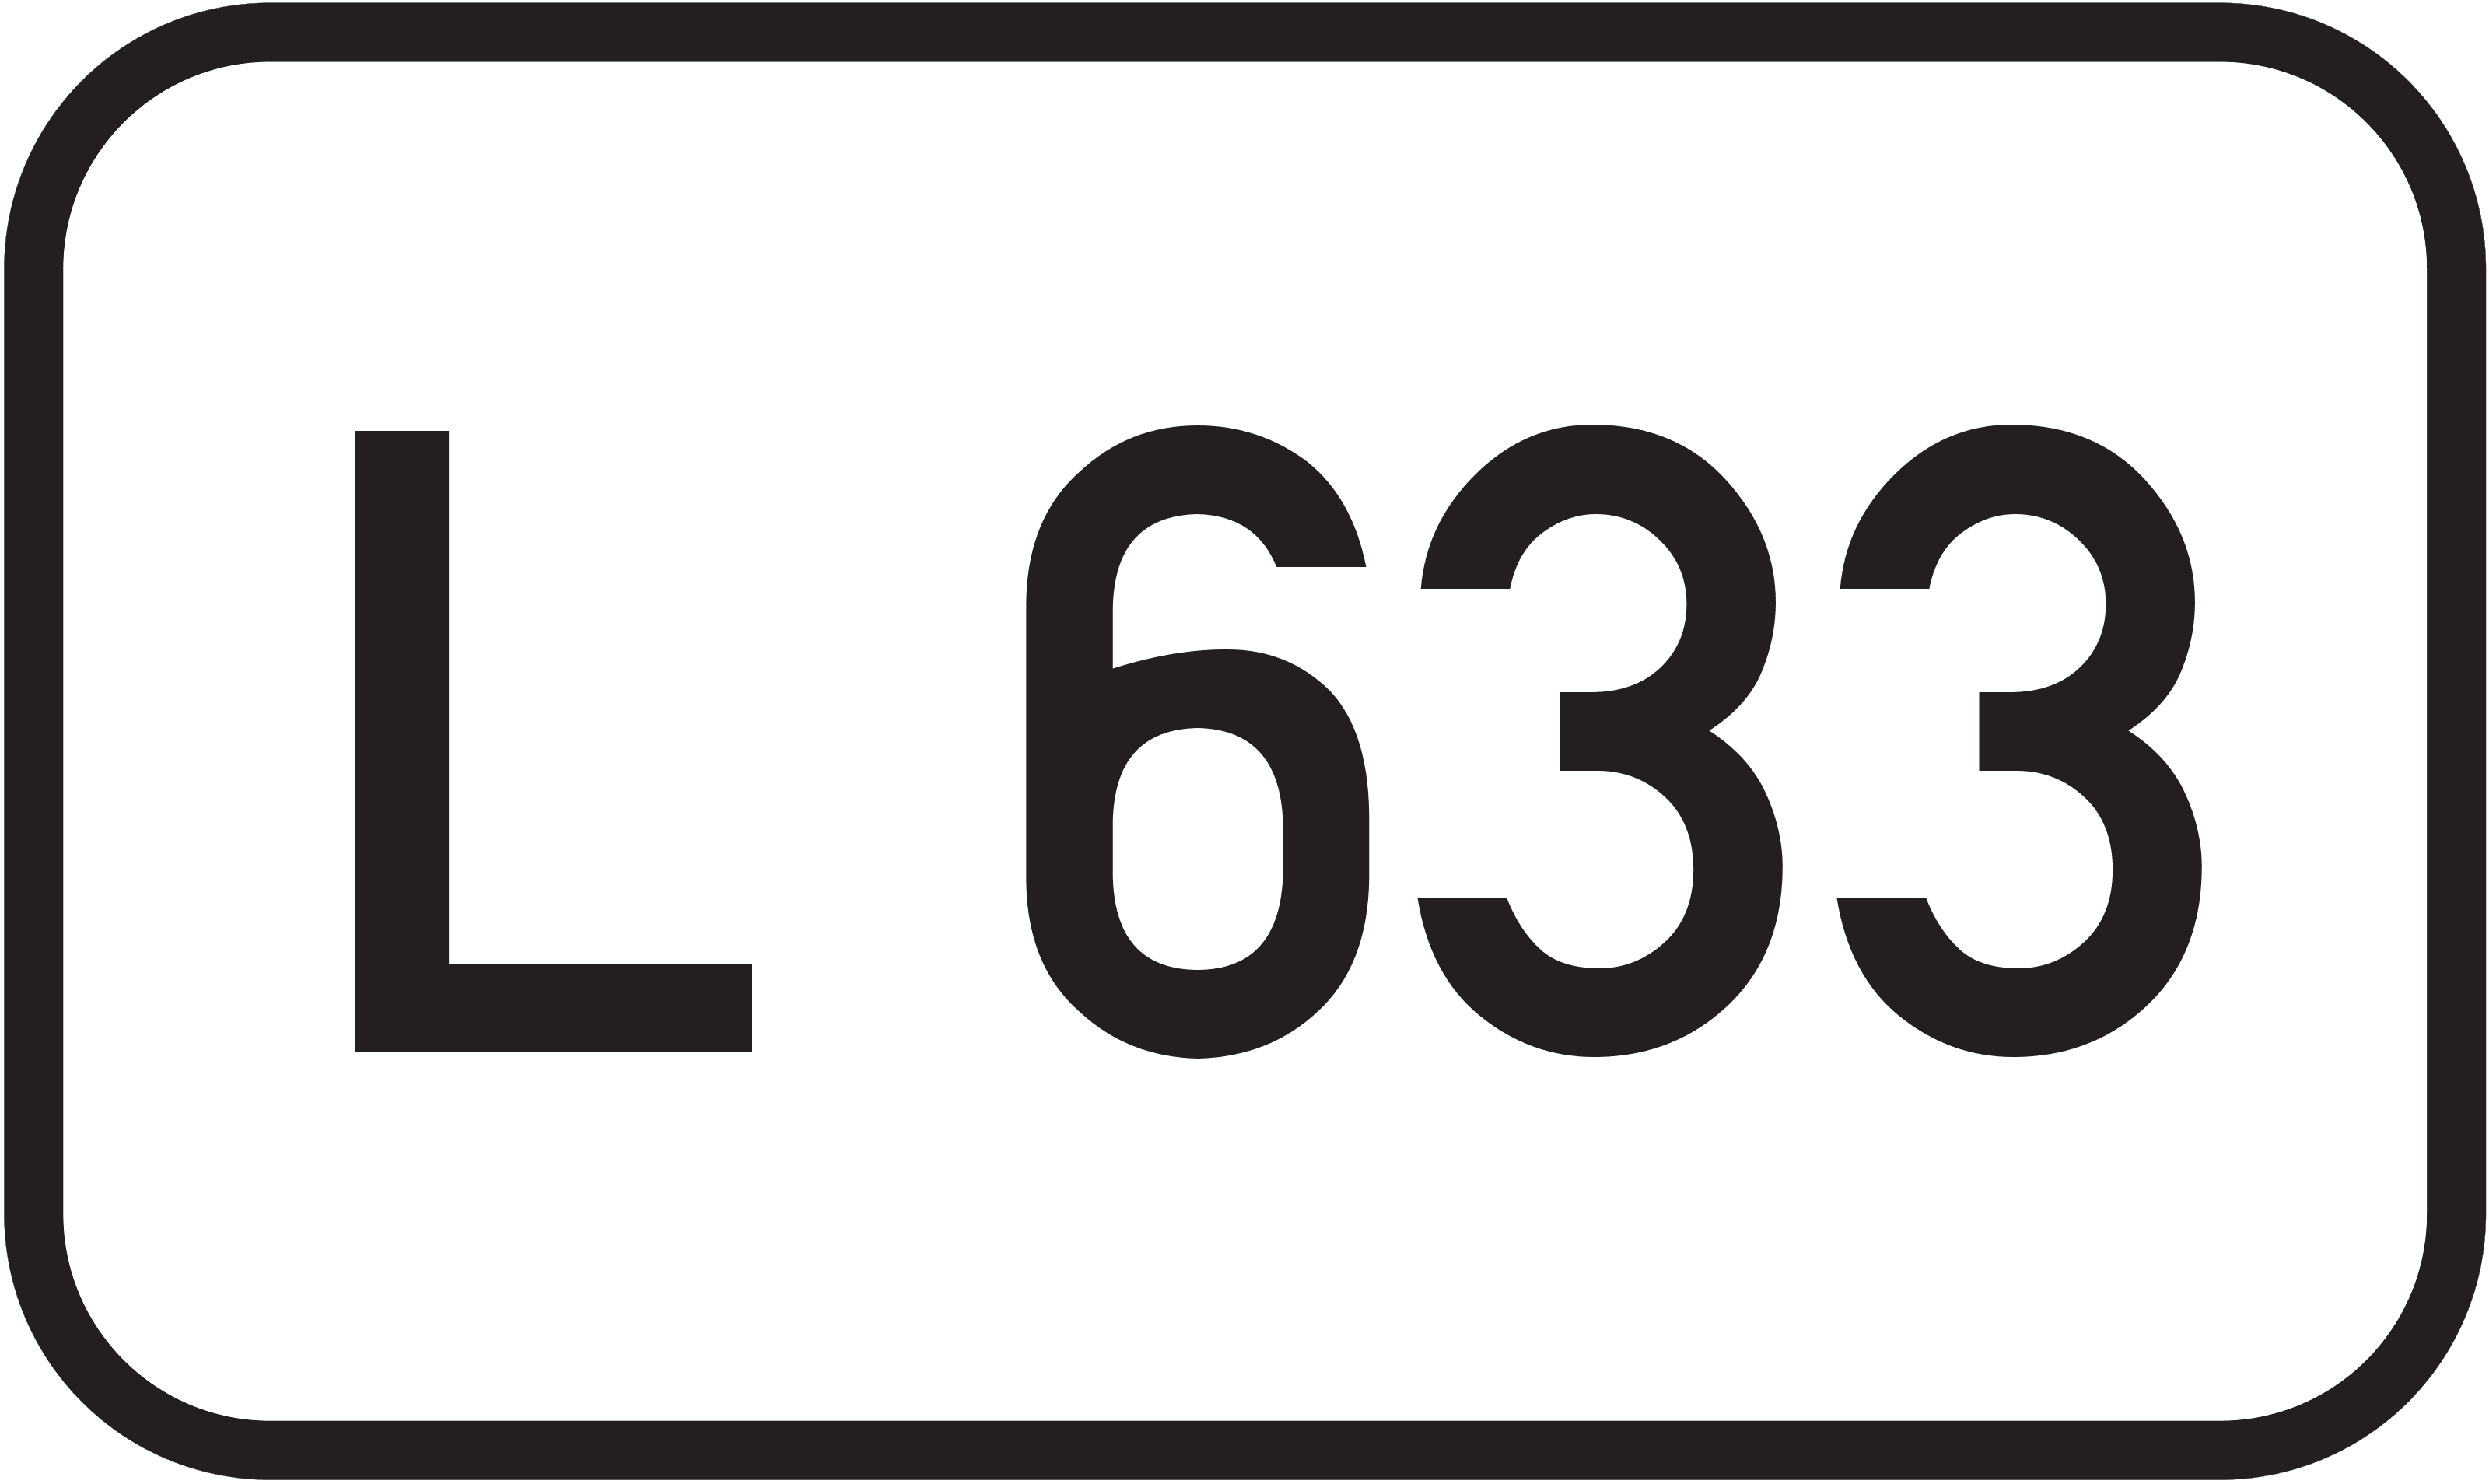 Landesstraße L 633